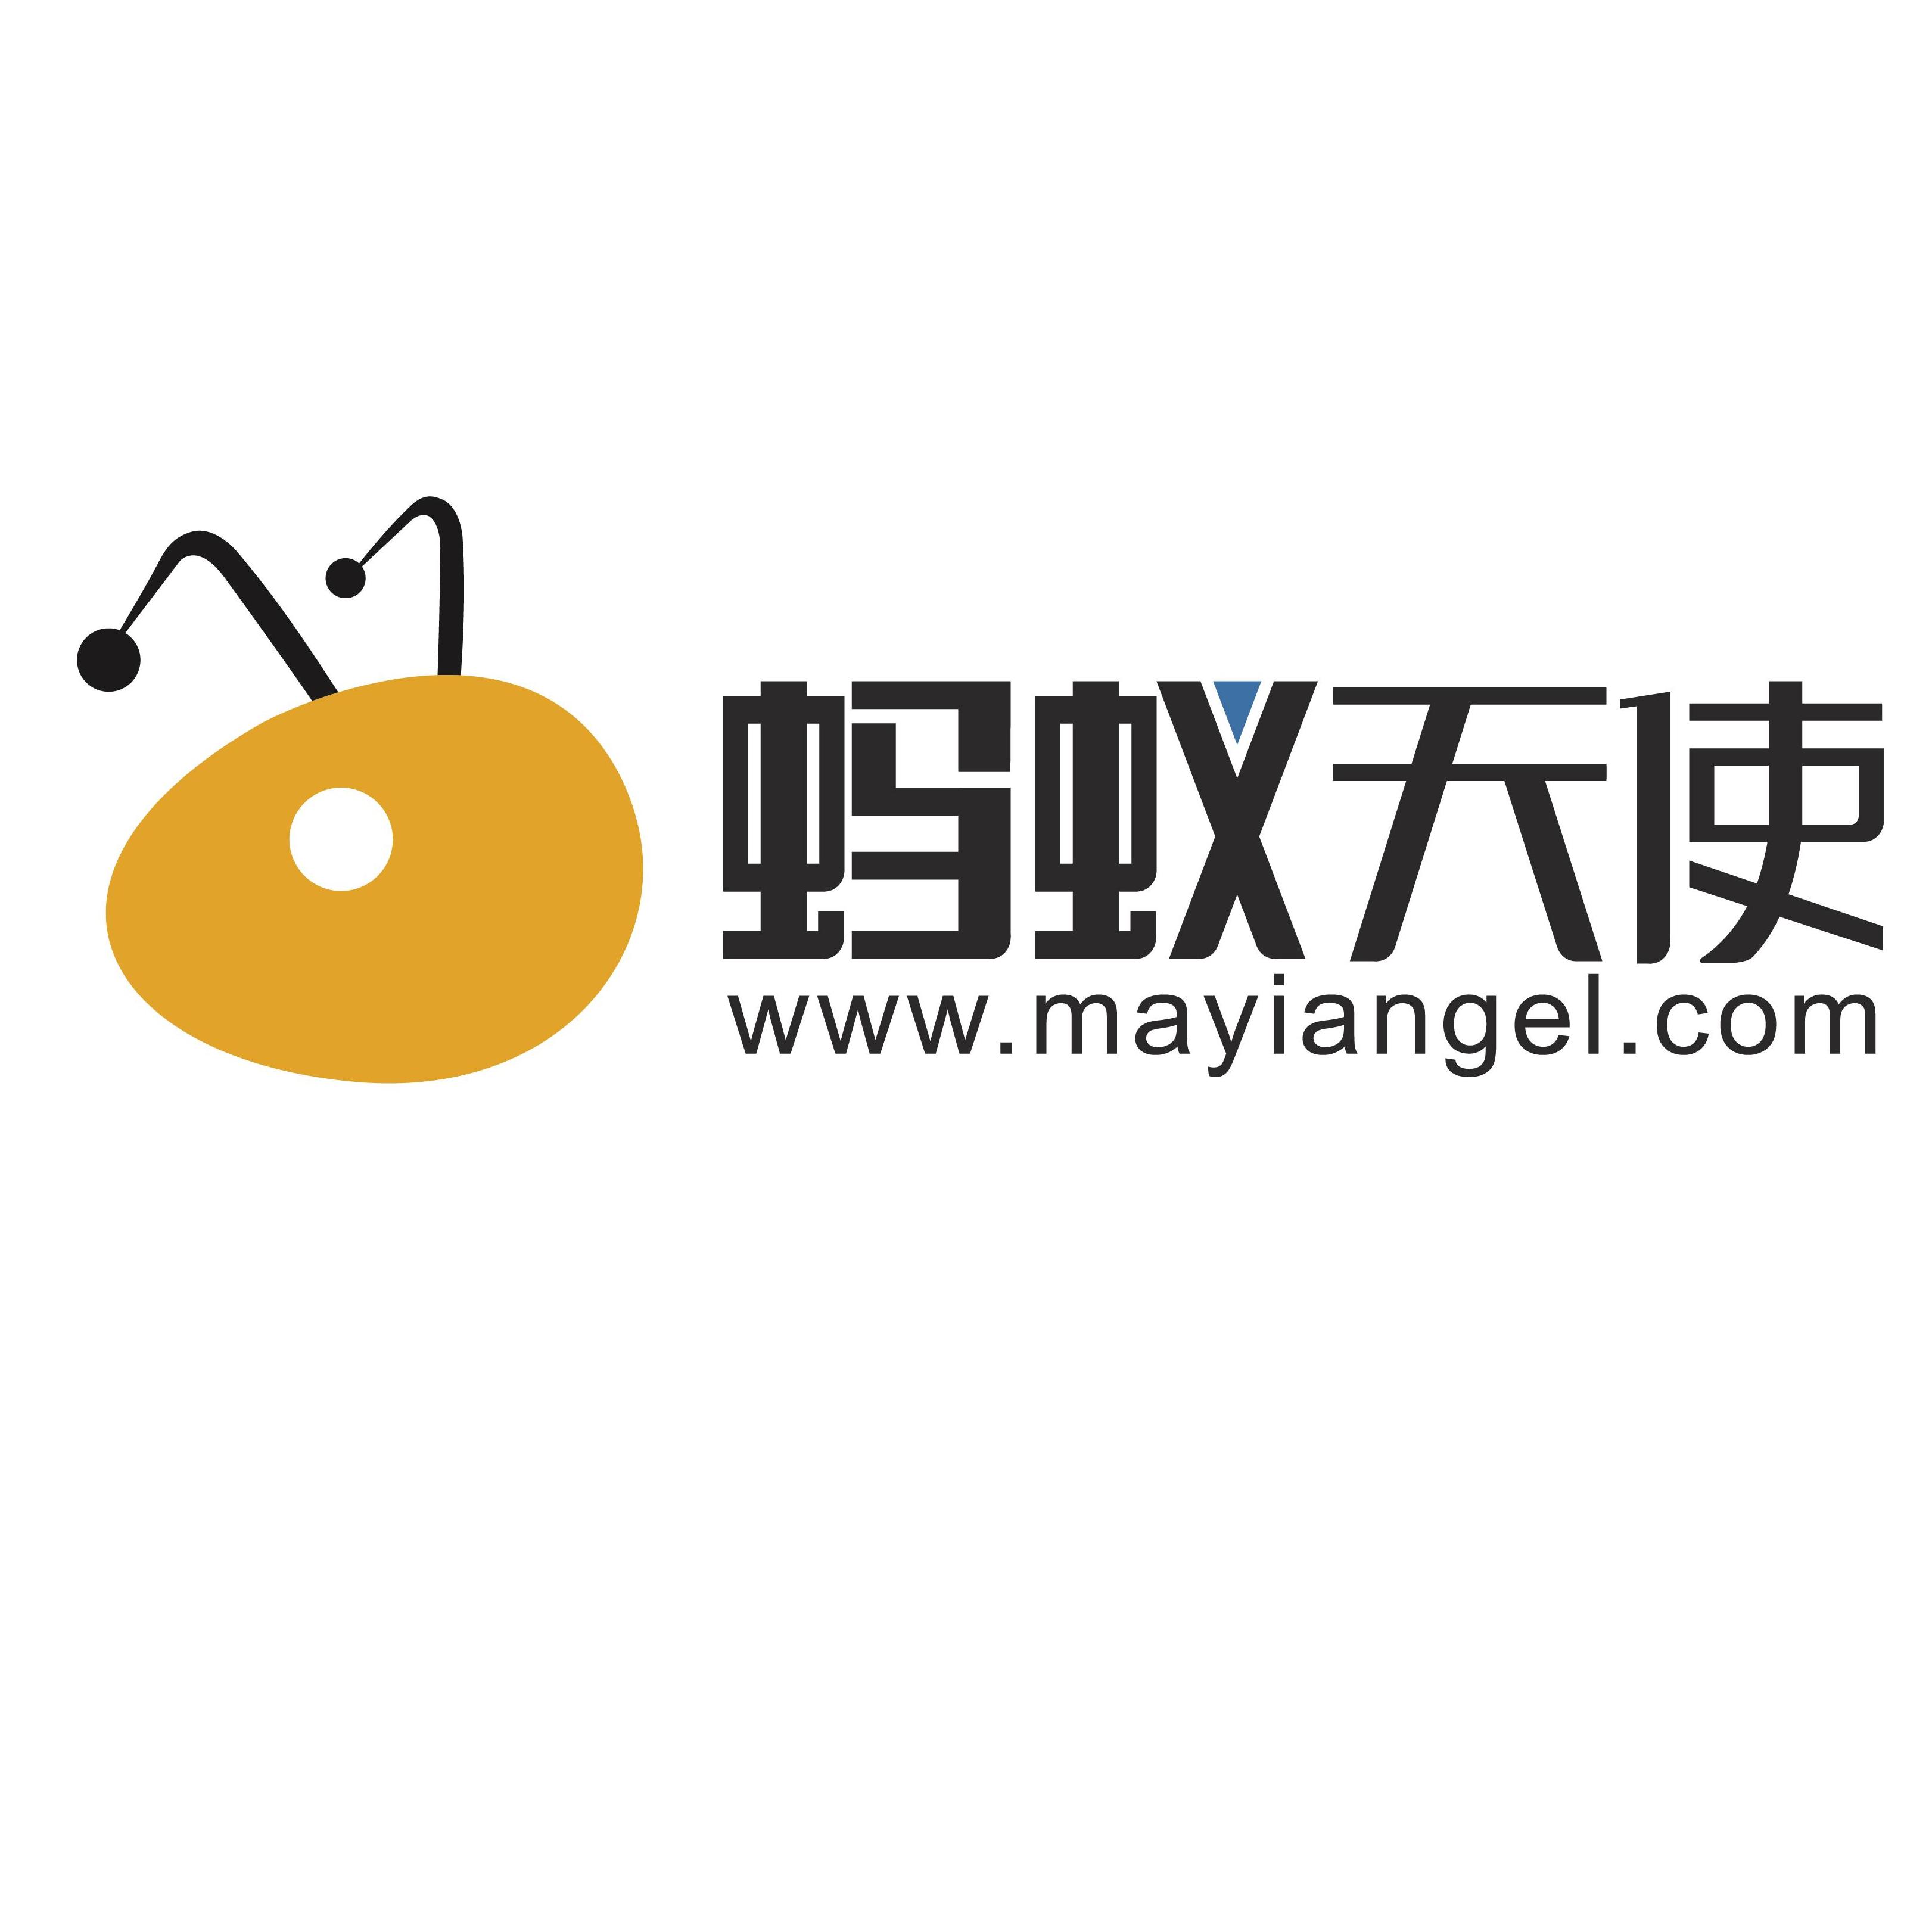 微财（上海）互联网金融信息服务有限公司